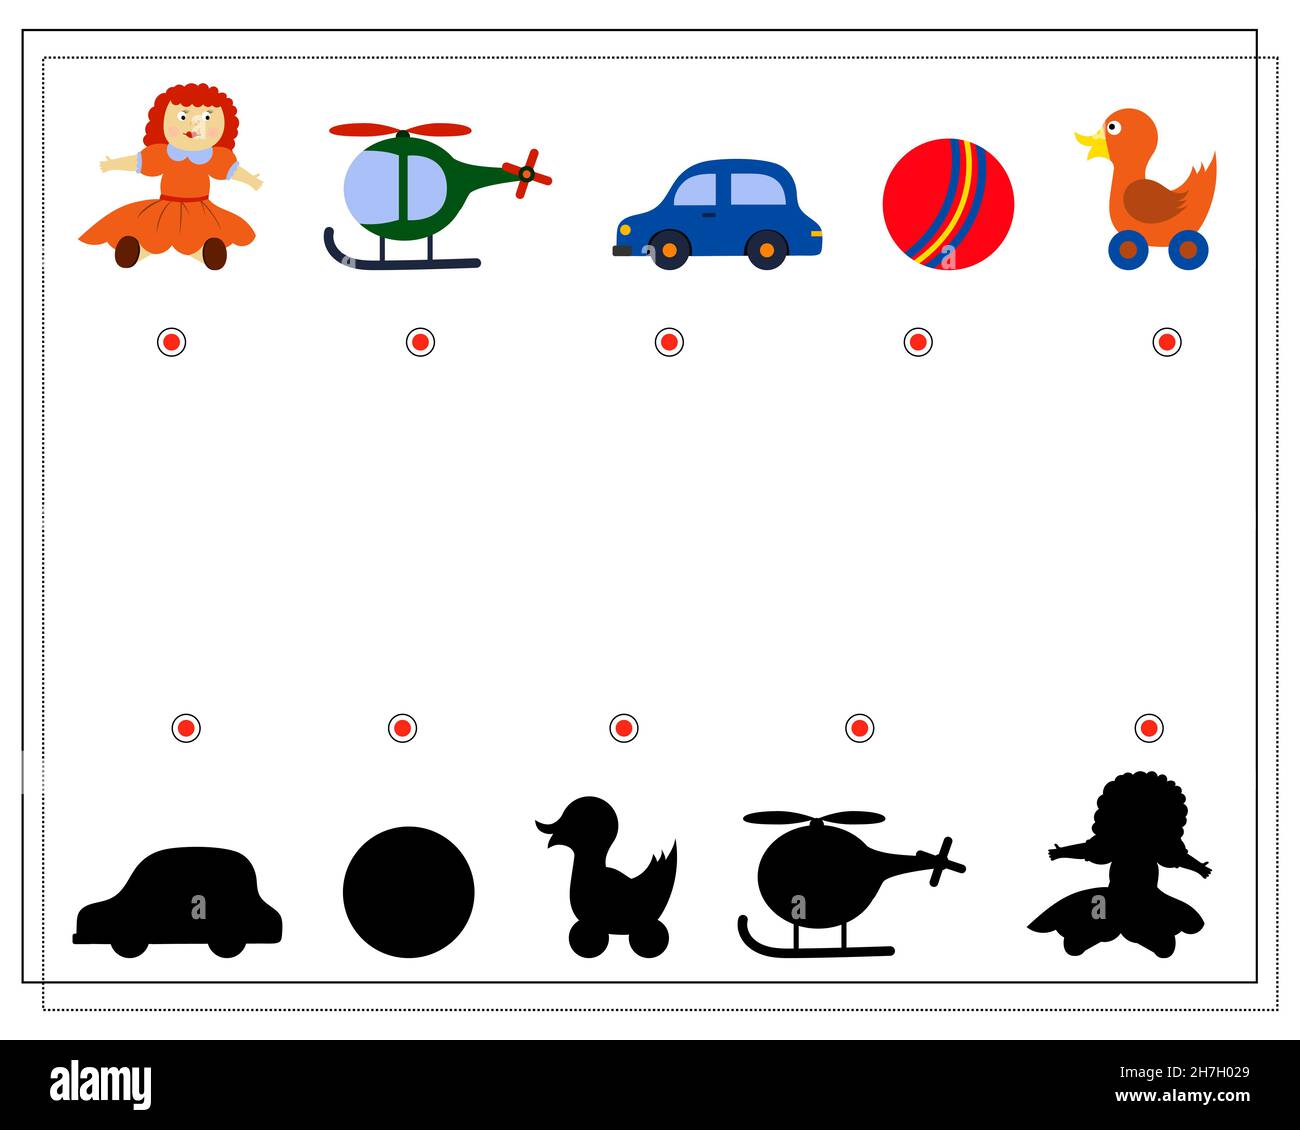 Jeu logique pour enfants, trouvez l'ombre droite. Jouets pour enfants, poupée, balle, voiture. Vecteur isolé sur fond blanc Illustration de Vecteur